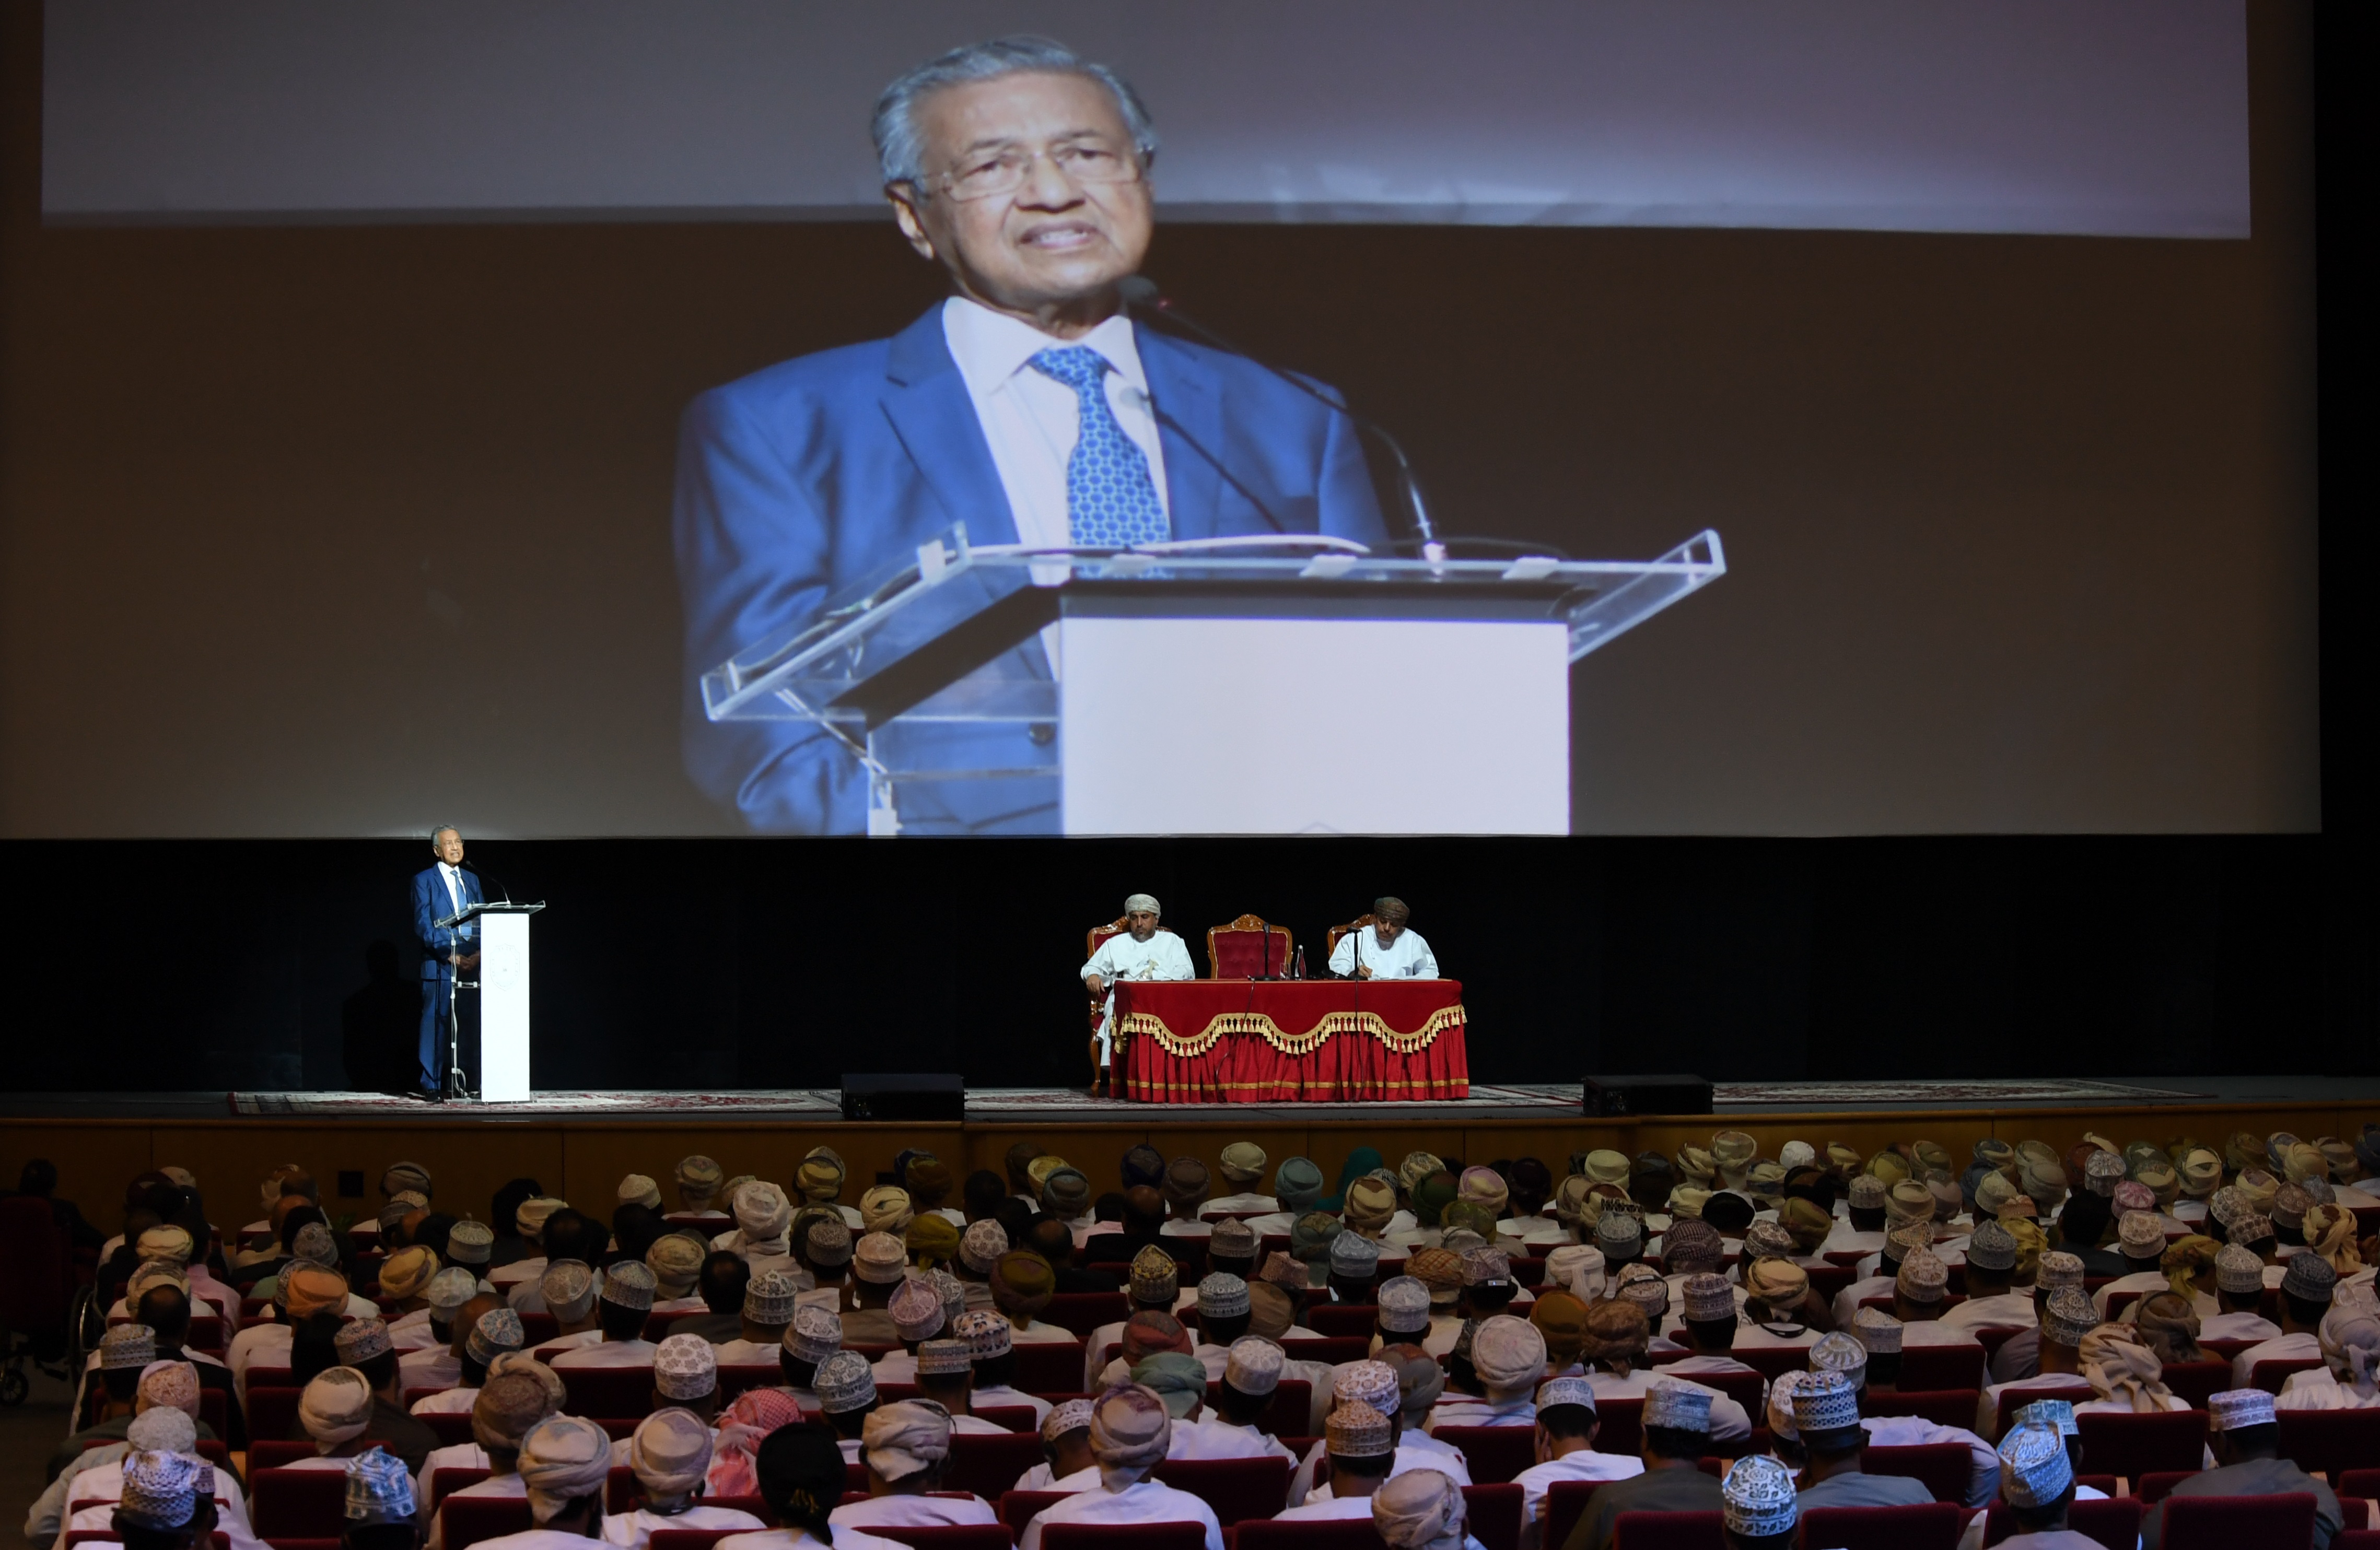 مهاتير محمد: ماليزيا لم تلجأ لسياسة الاستقراض الخارجي للنهوض باقتصادها بل كانت تنفق بحدود الموارد الموجودة